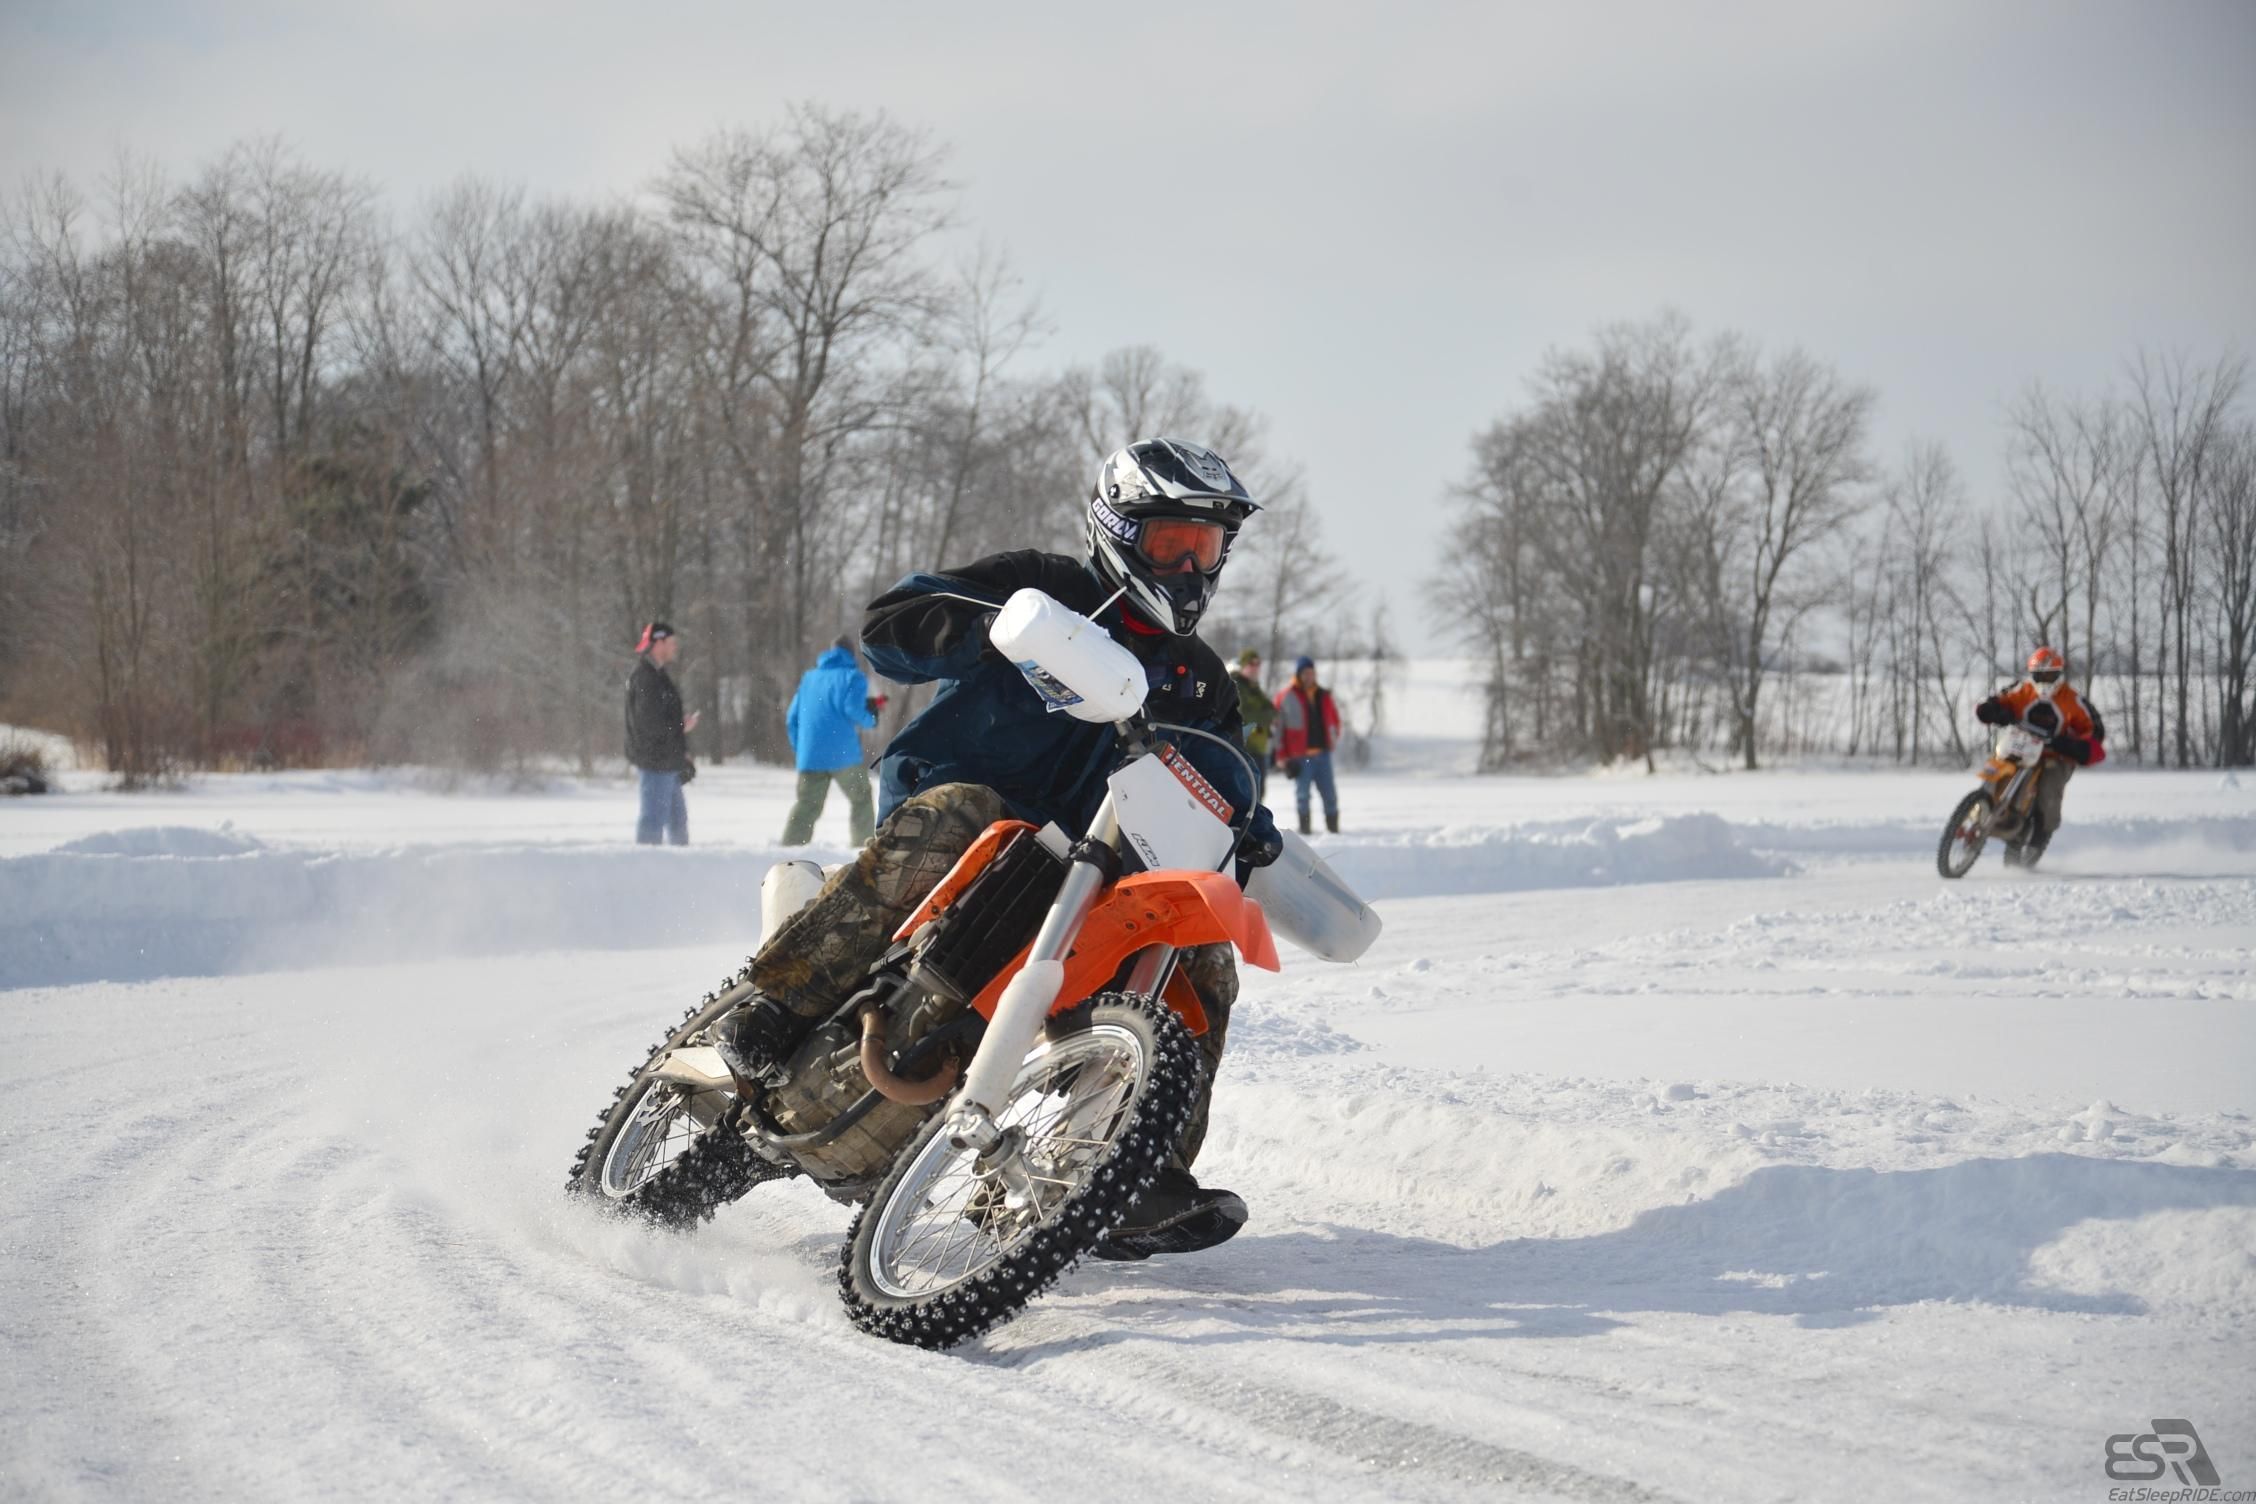 Jugs KTM - Ice riding